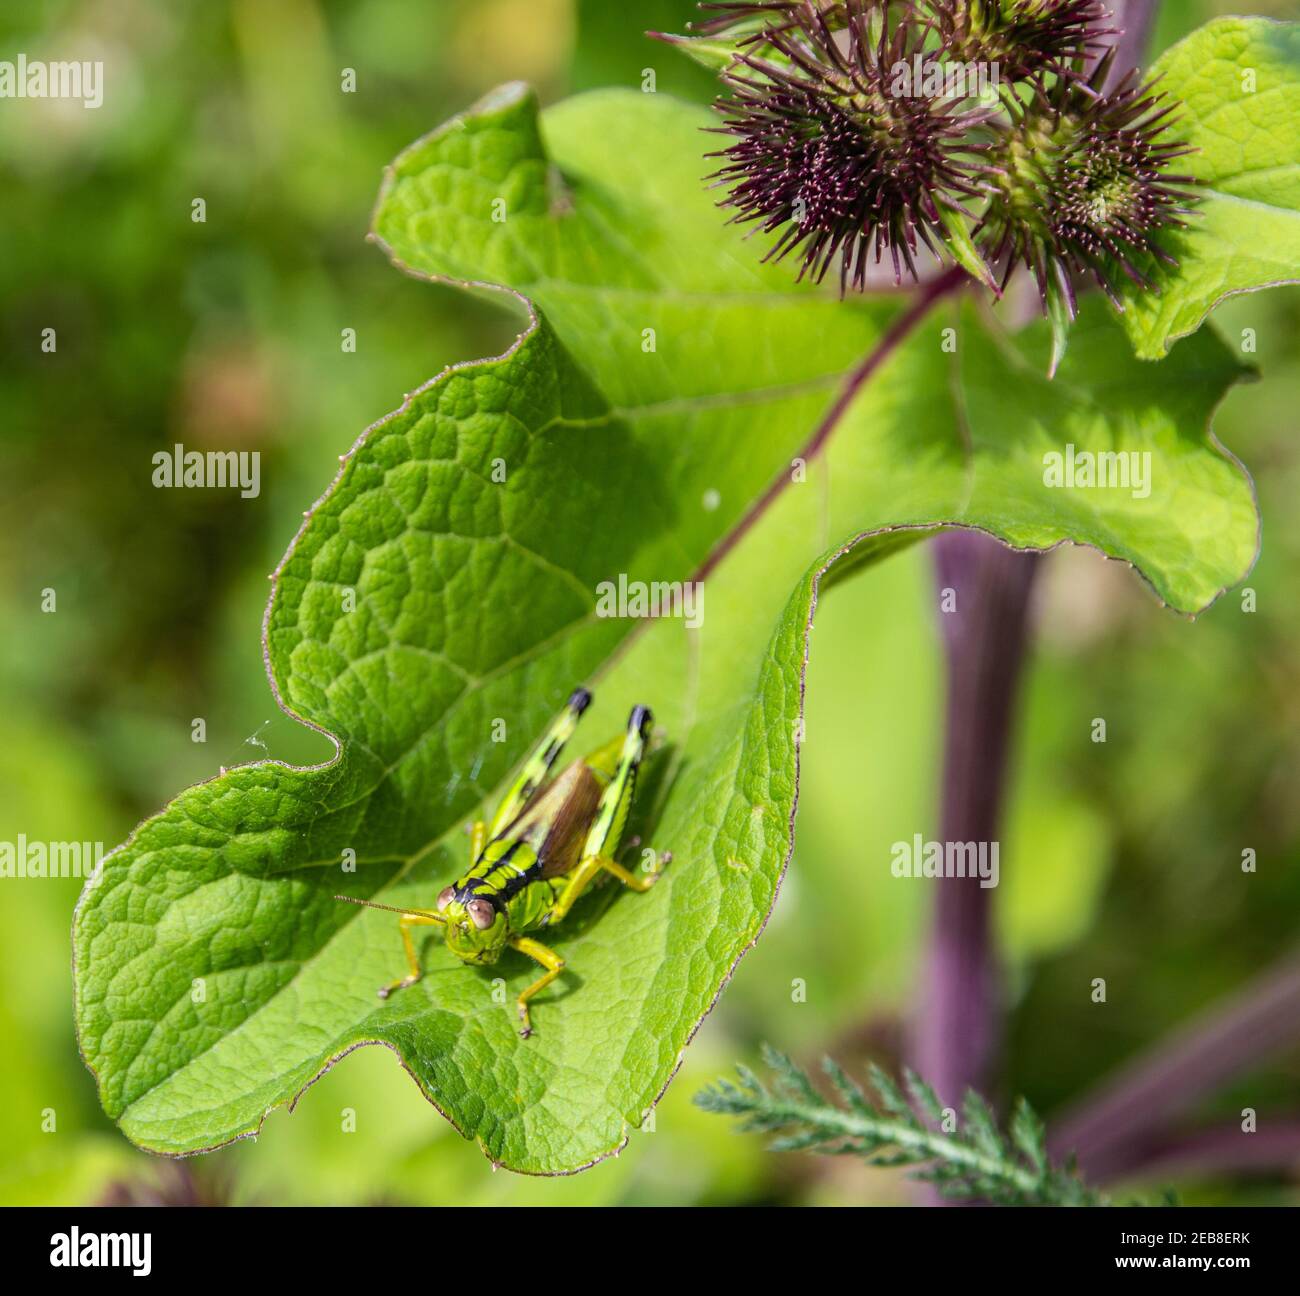 Miramella Alpina Grasshopper sulla foglia verde. Messa a fuoco selettiva Foto Stock